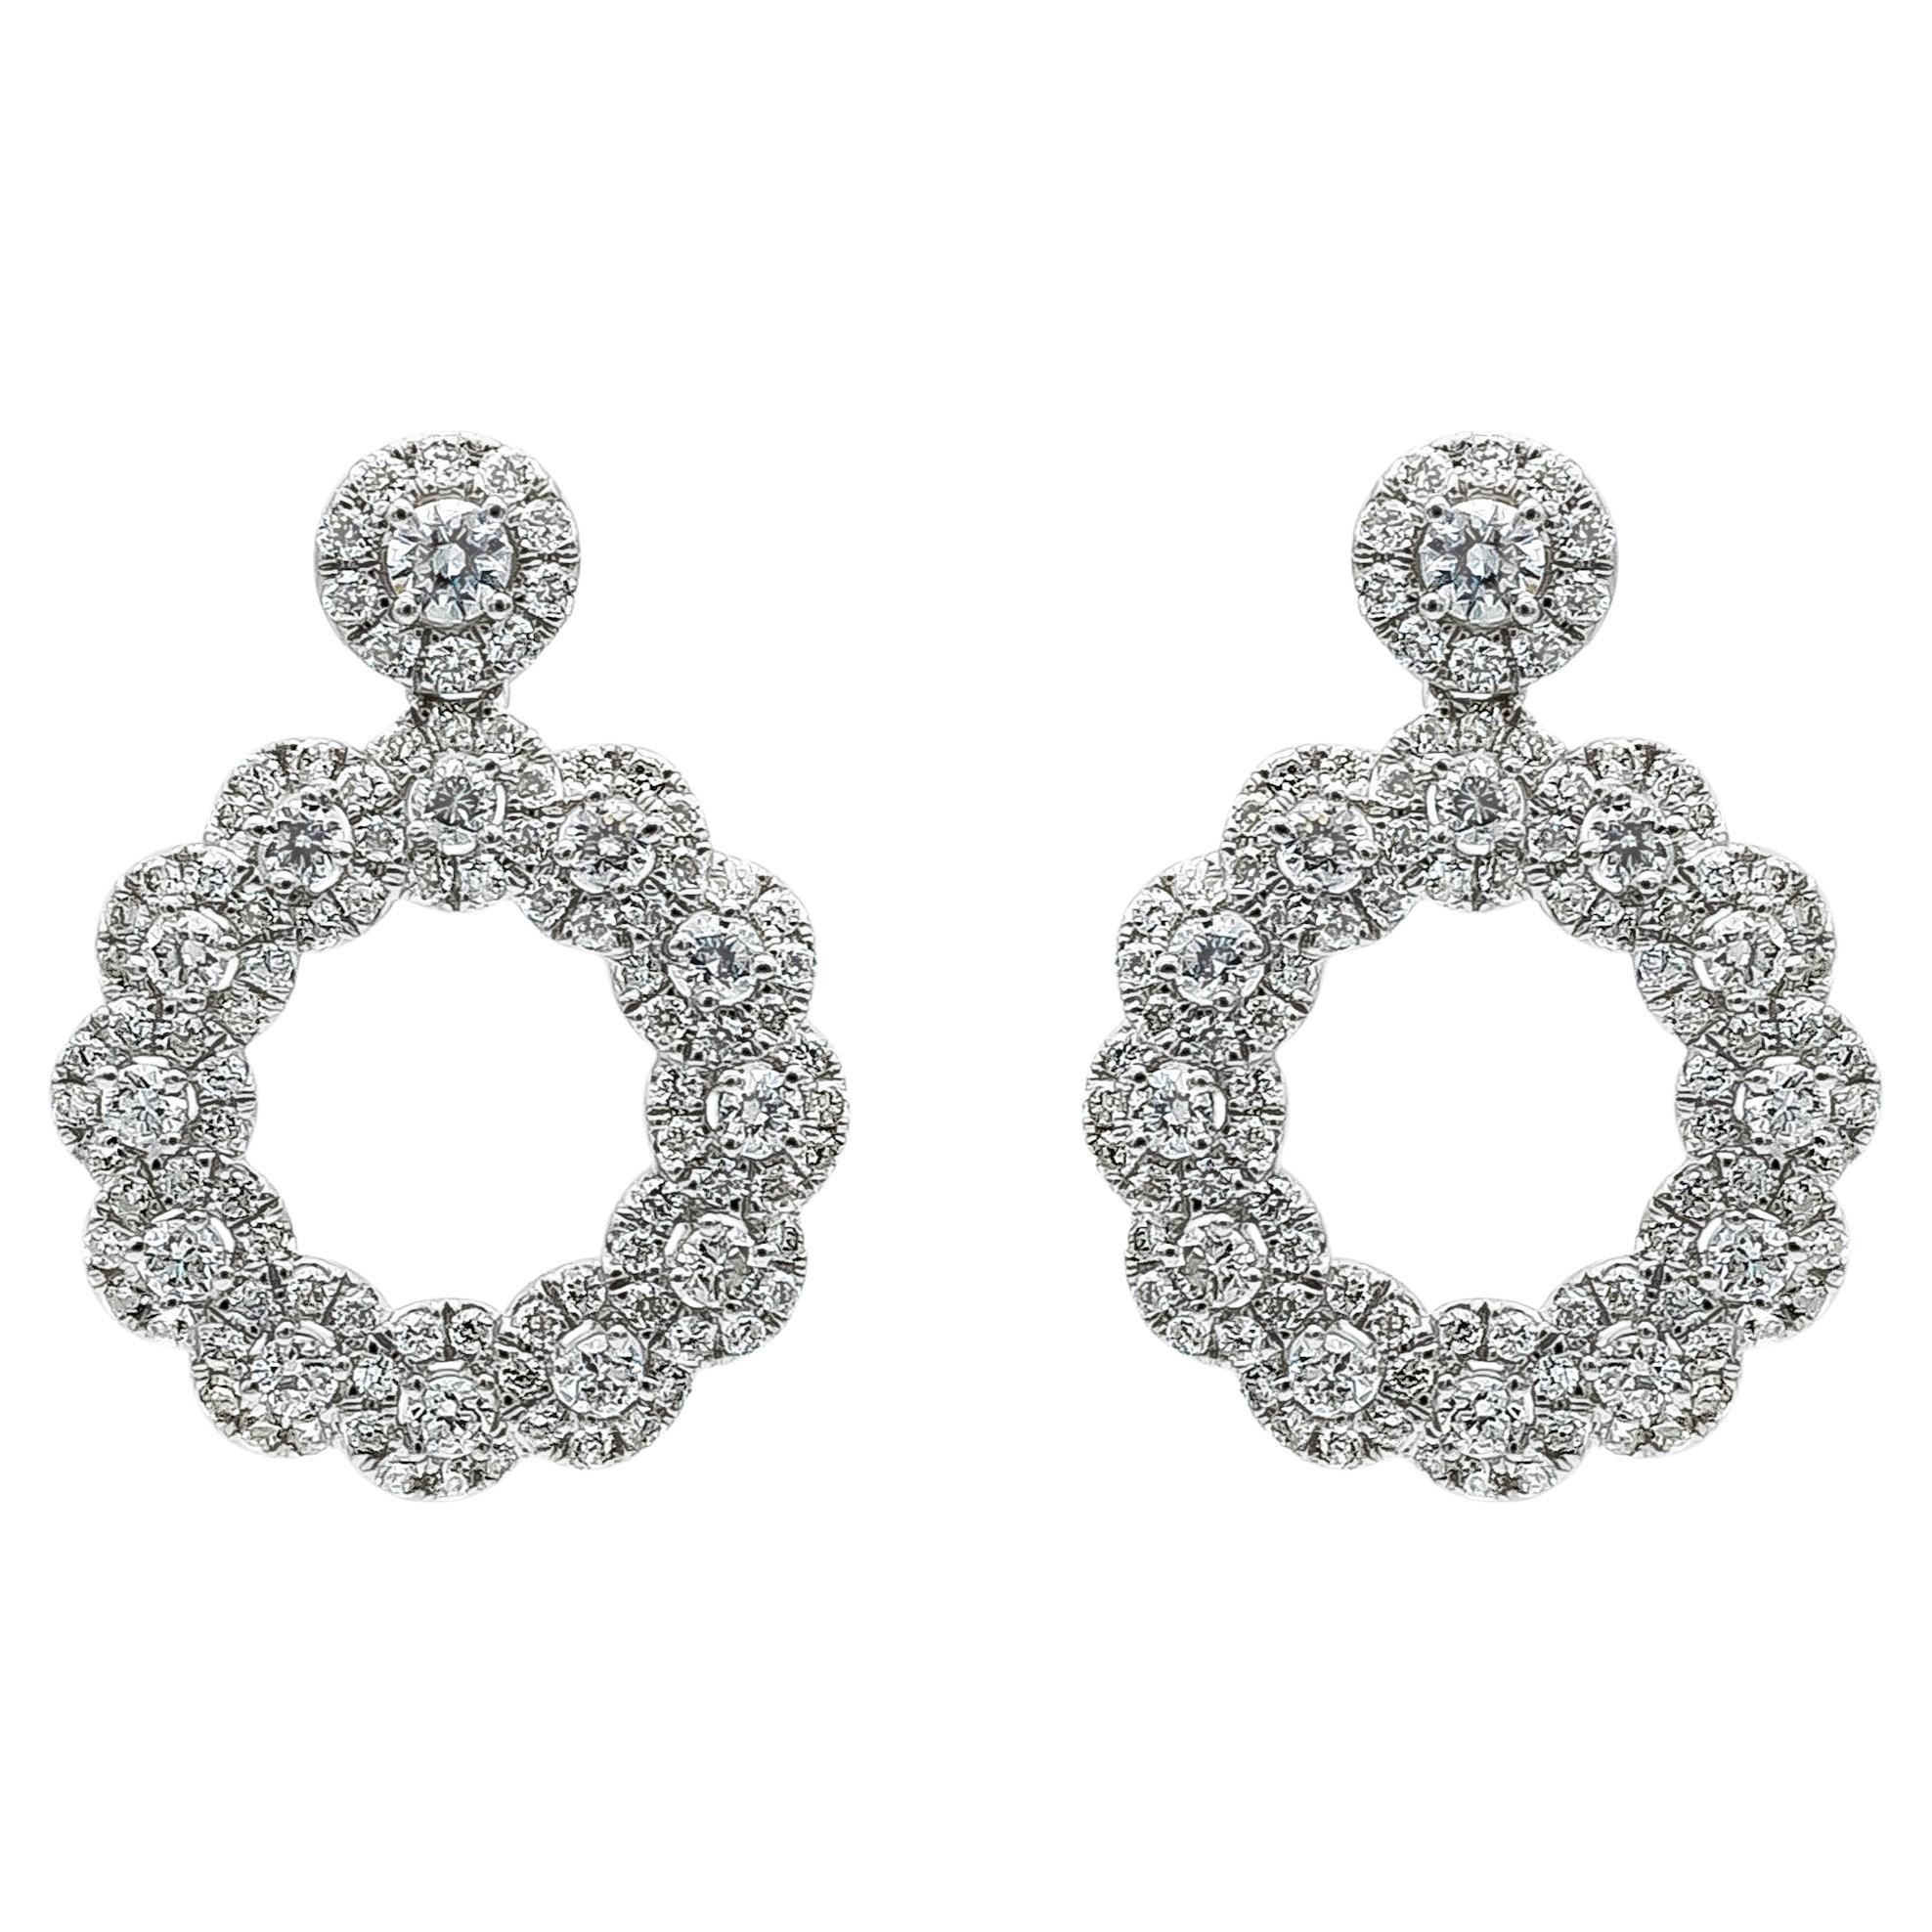 Pendants d'oreilles à la mode Roman Malakov avec diamants ronds de 1,42 carat au total